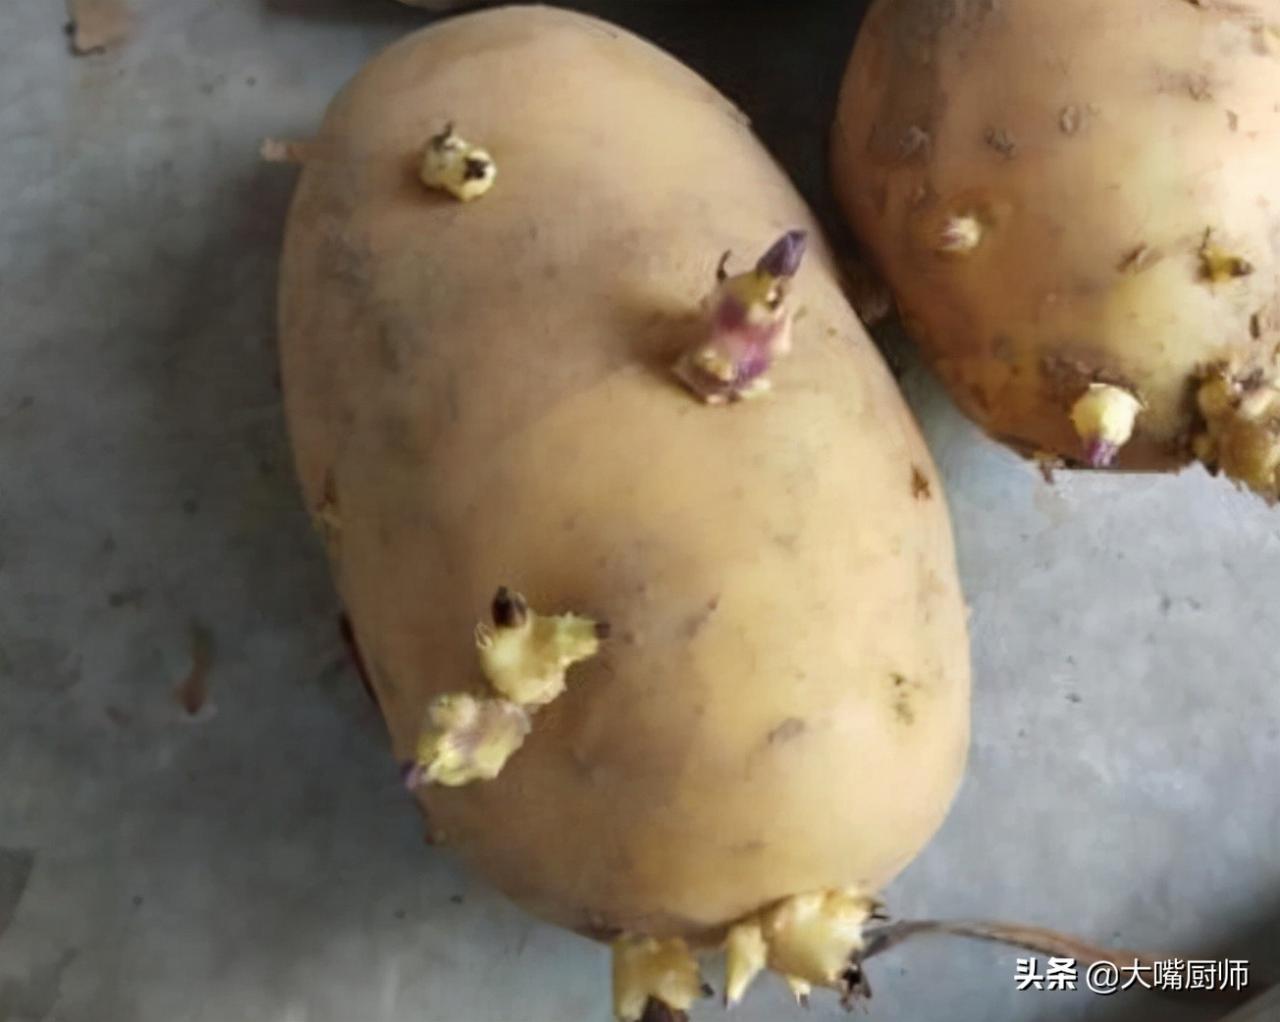 土豆发芽了还能吃吗,吃了会怎么样，有毒吗（其实很多人都搞错了）